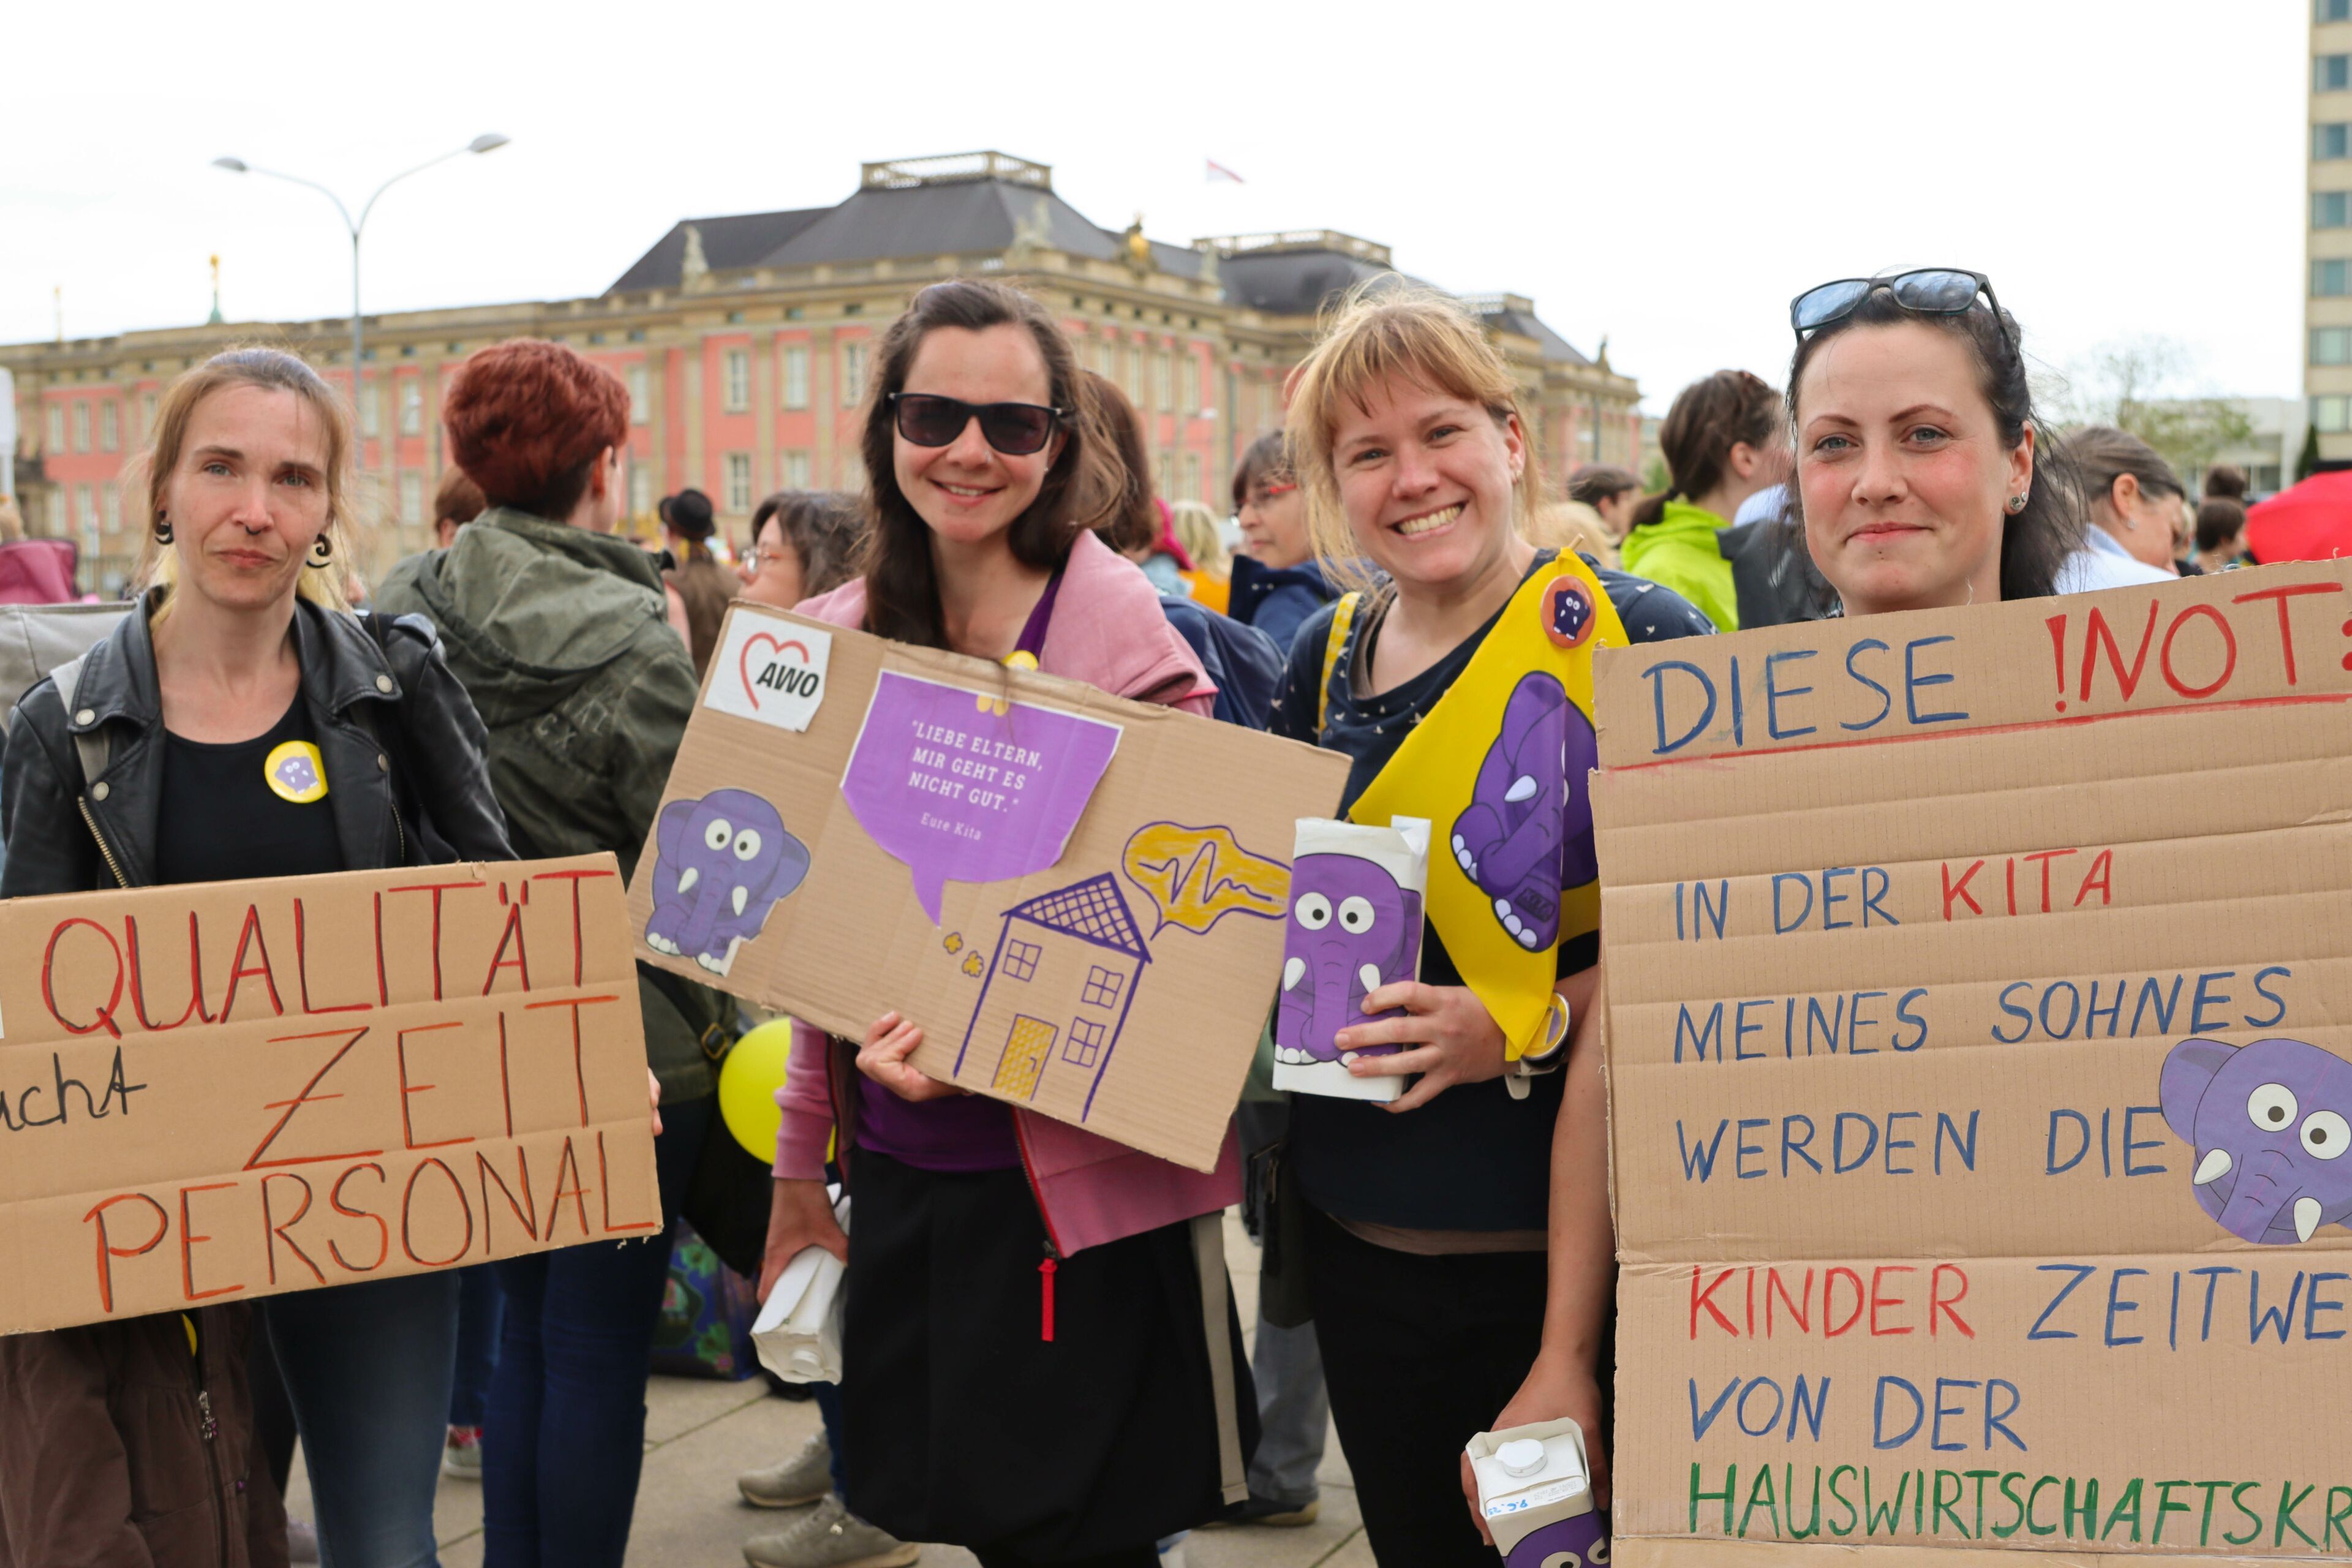 Der Landtag Brandenburg im Hintergrund. 4 Frauen mit Plakaten auf einer Demonstration. Die Frauen halten ihre Plakate in die Kamera und lächeln.